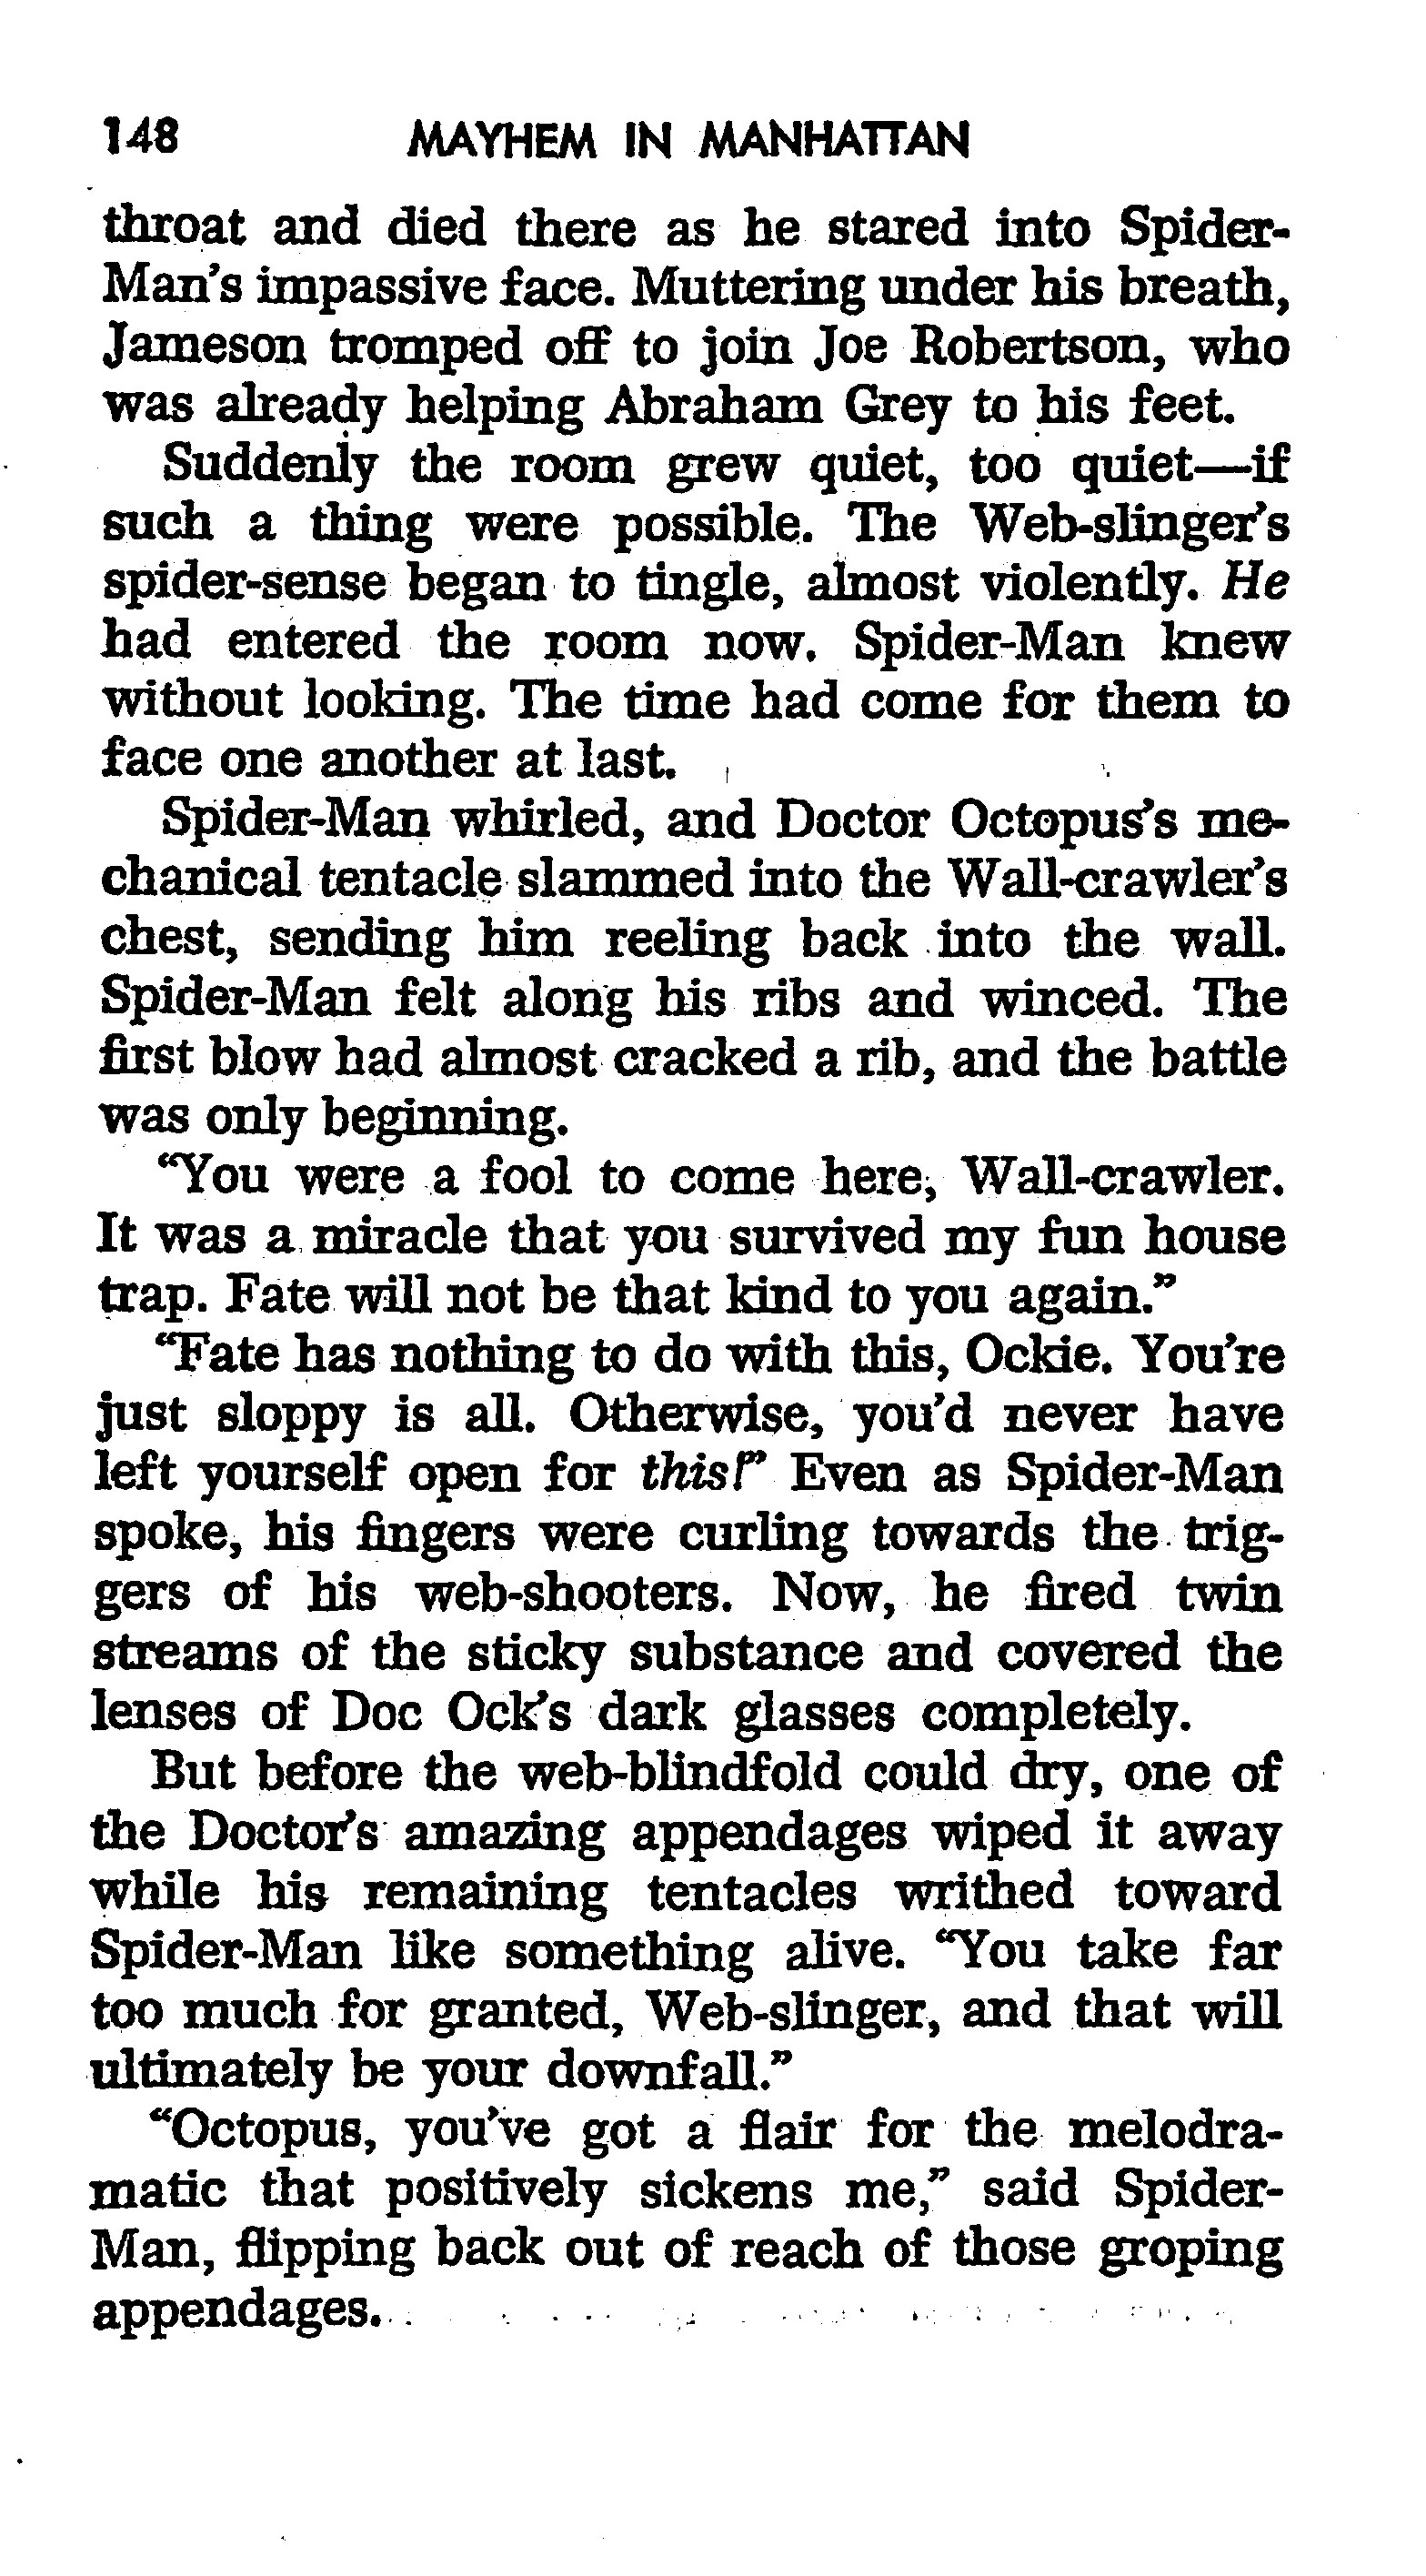 Read online The Amazing Spider-Man: Mayhem in Manhattan comic -  Issue # TPB (Part 2) - 50